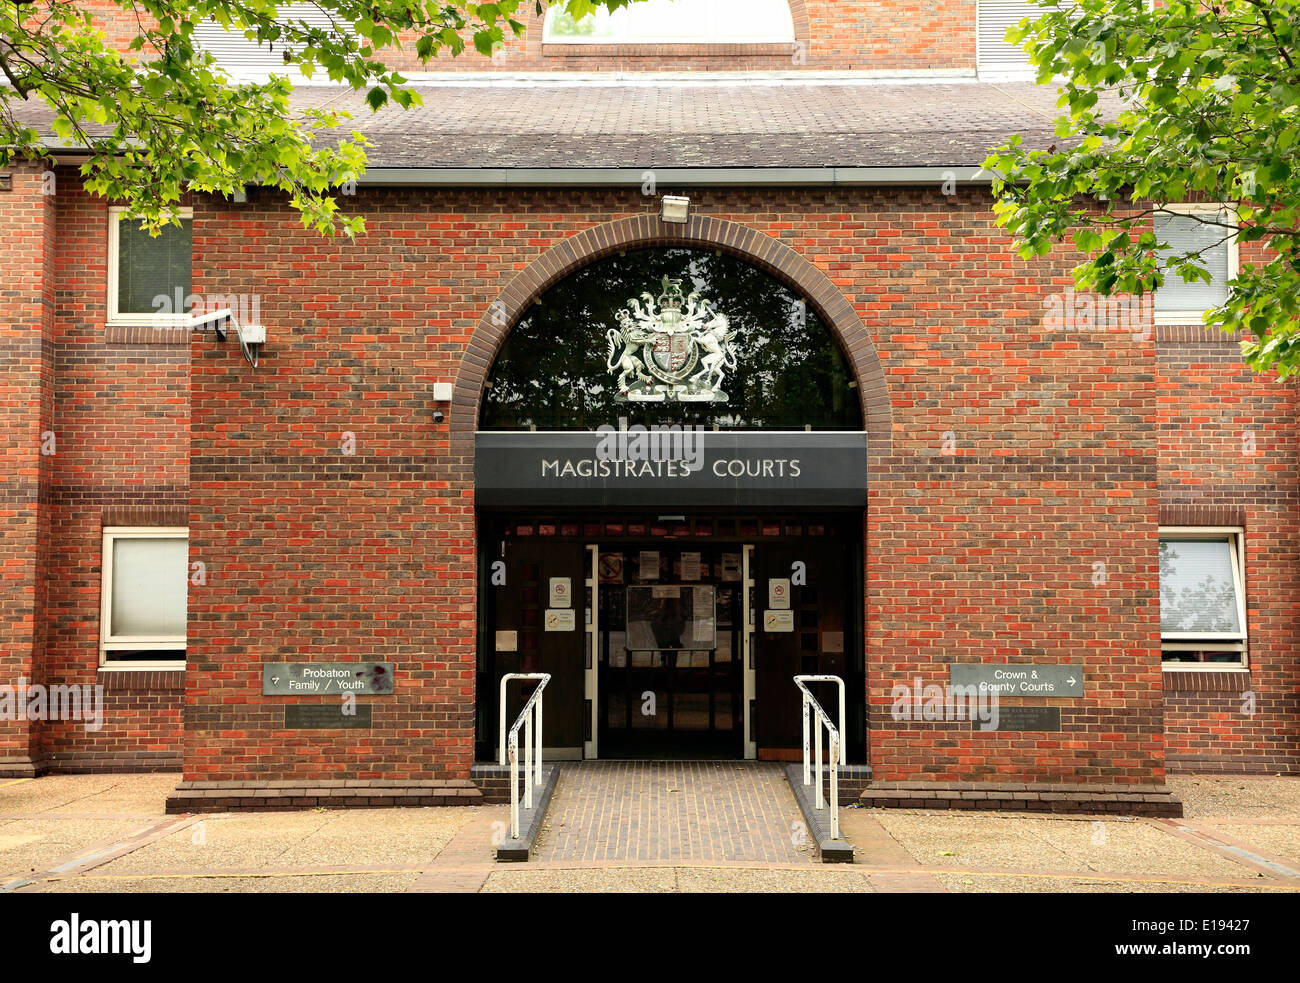 Norwich Magistrates Courts, Amtsgericht Recht Eingang, Norfolk England UK englische Gerichte Stockfoto